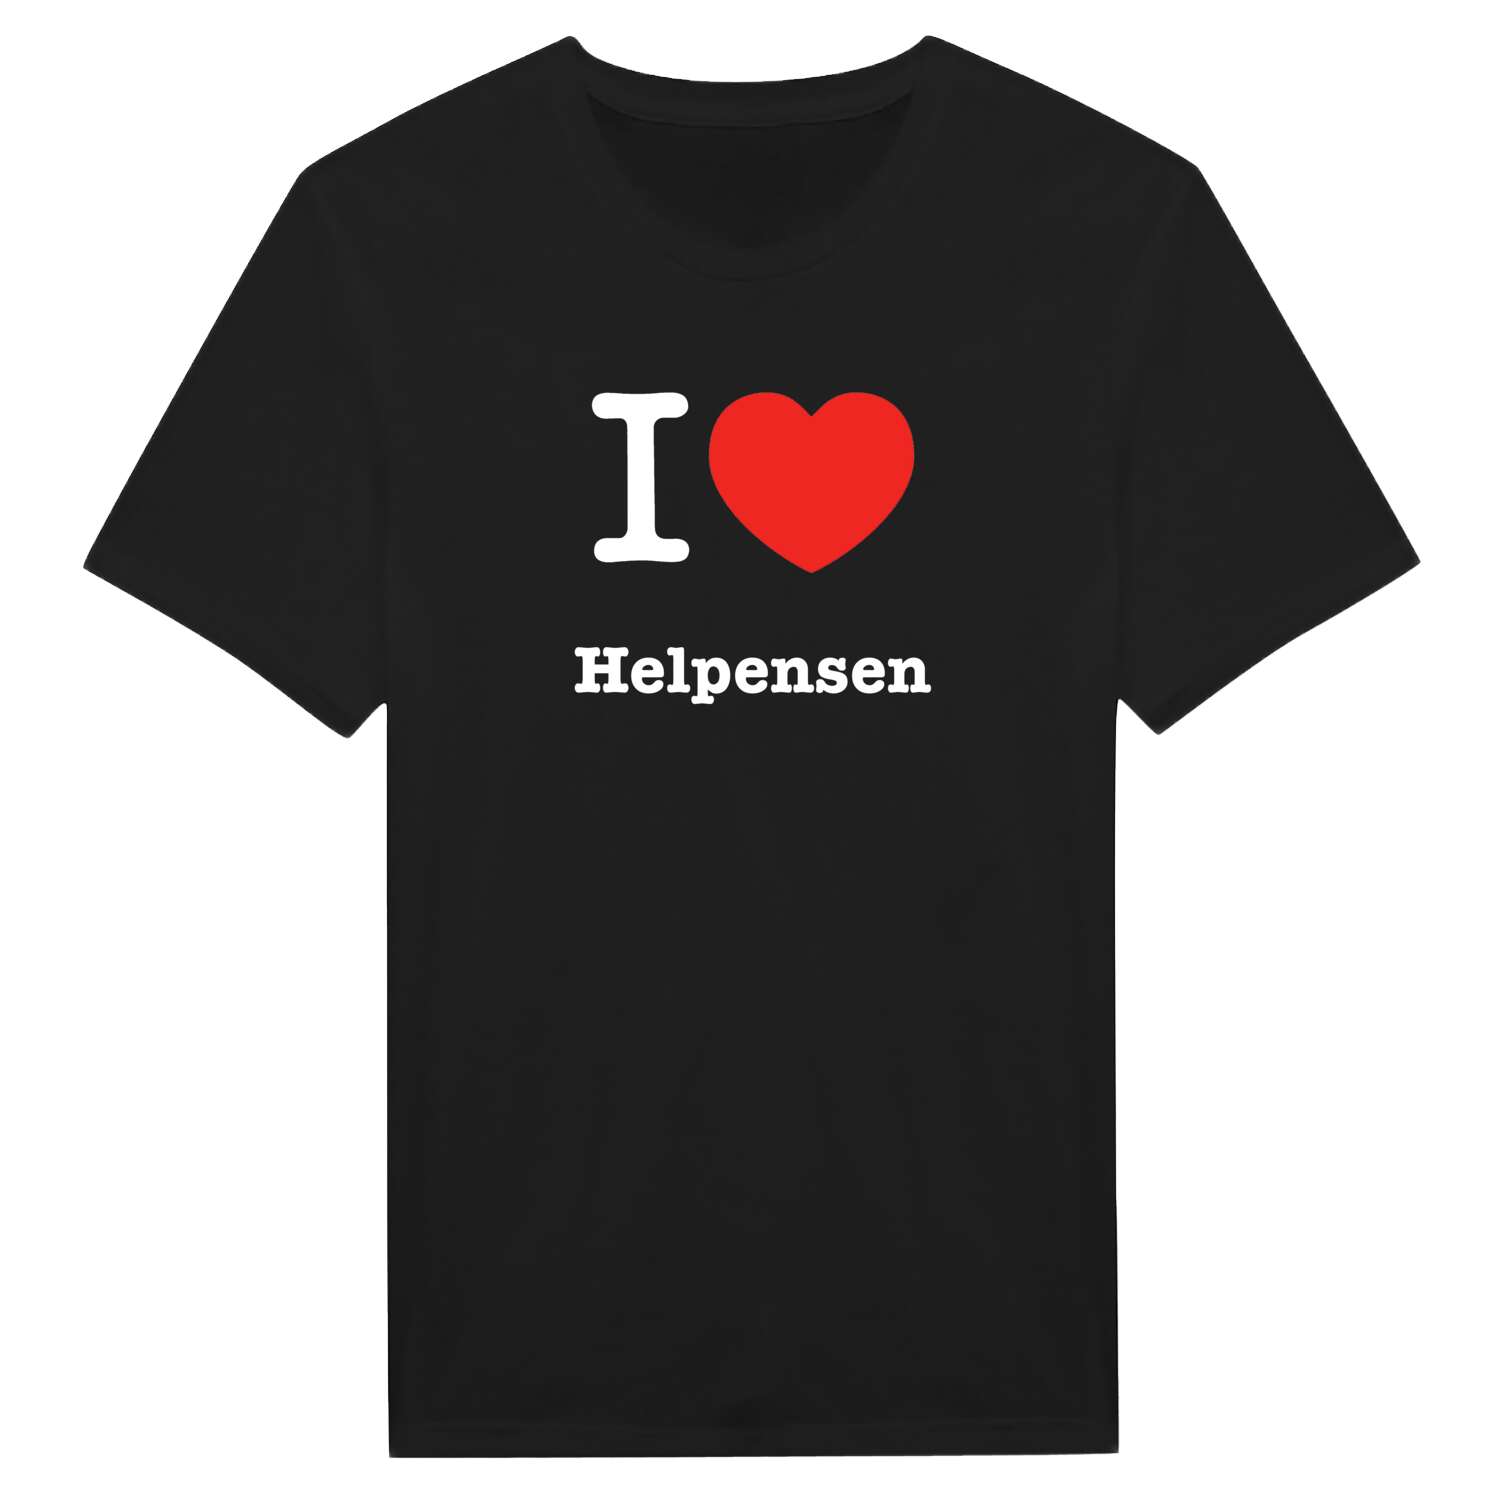 Helpensen T-Shirt »I love«